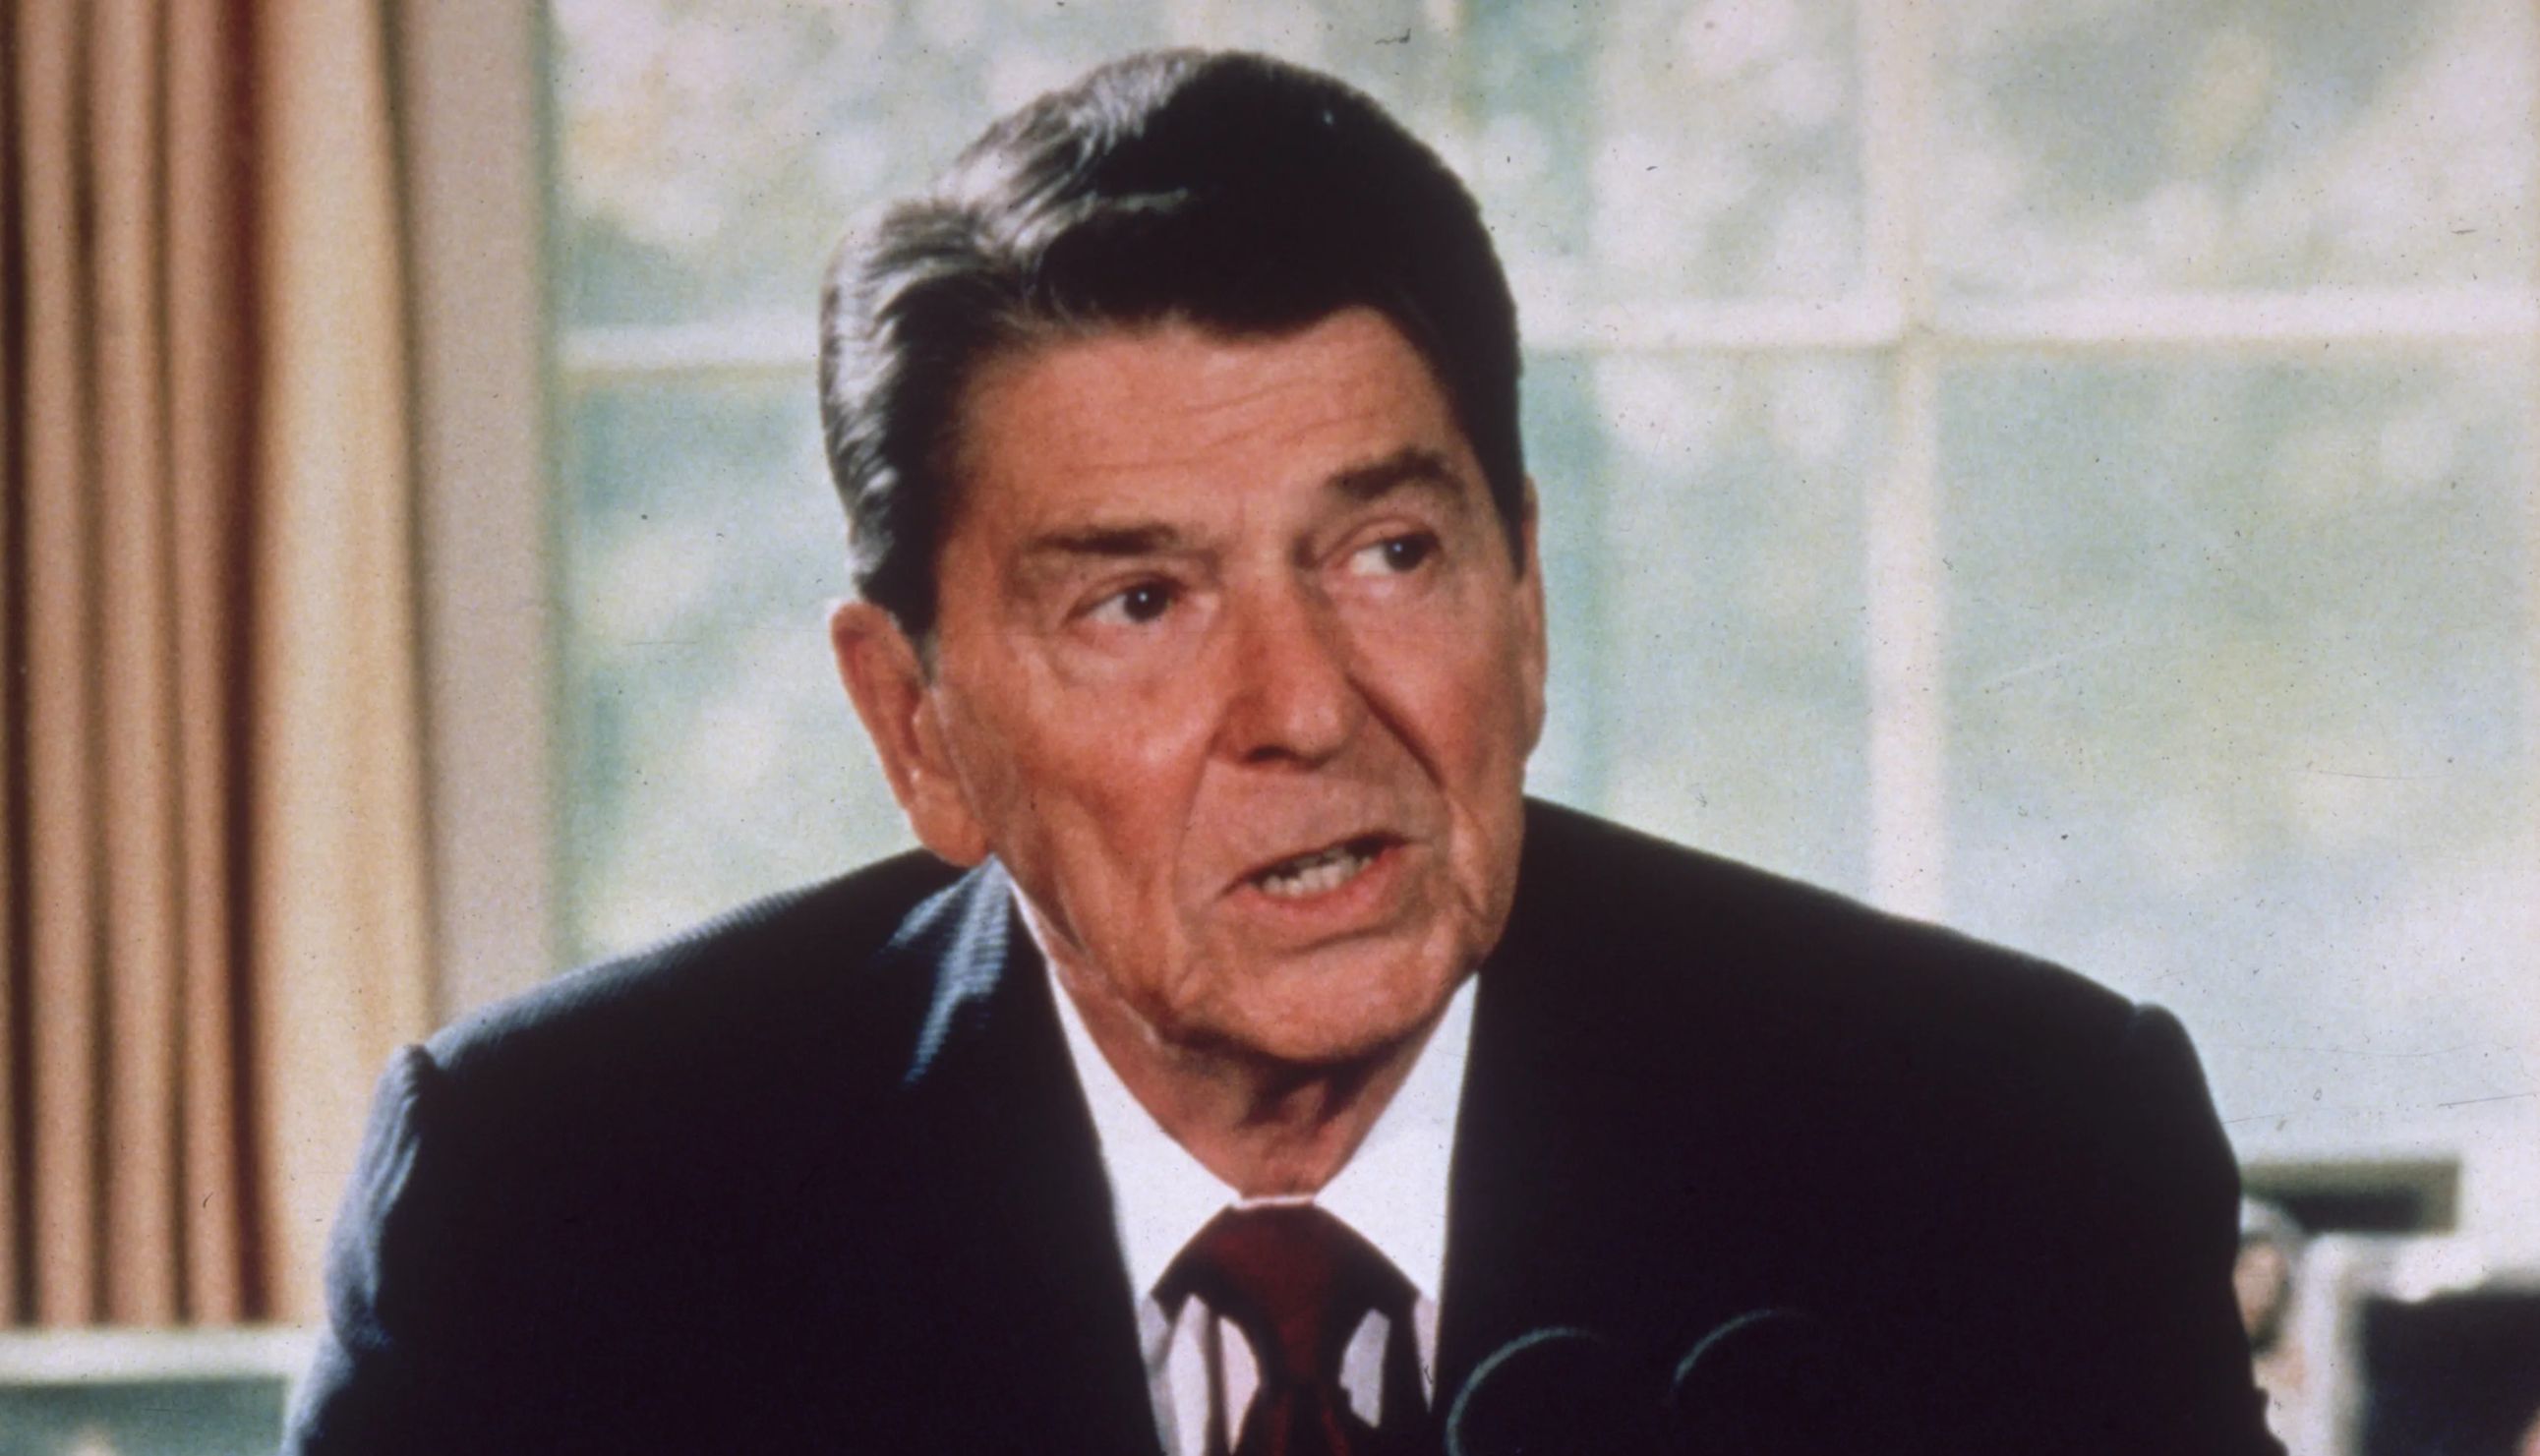 President Ronald Reagan speaks in the White House.